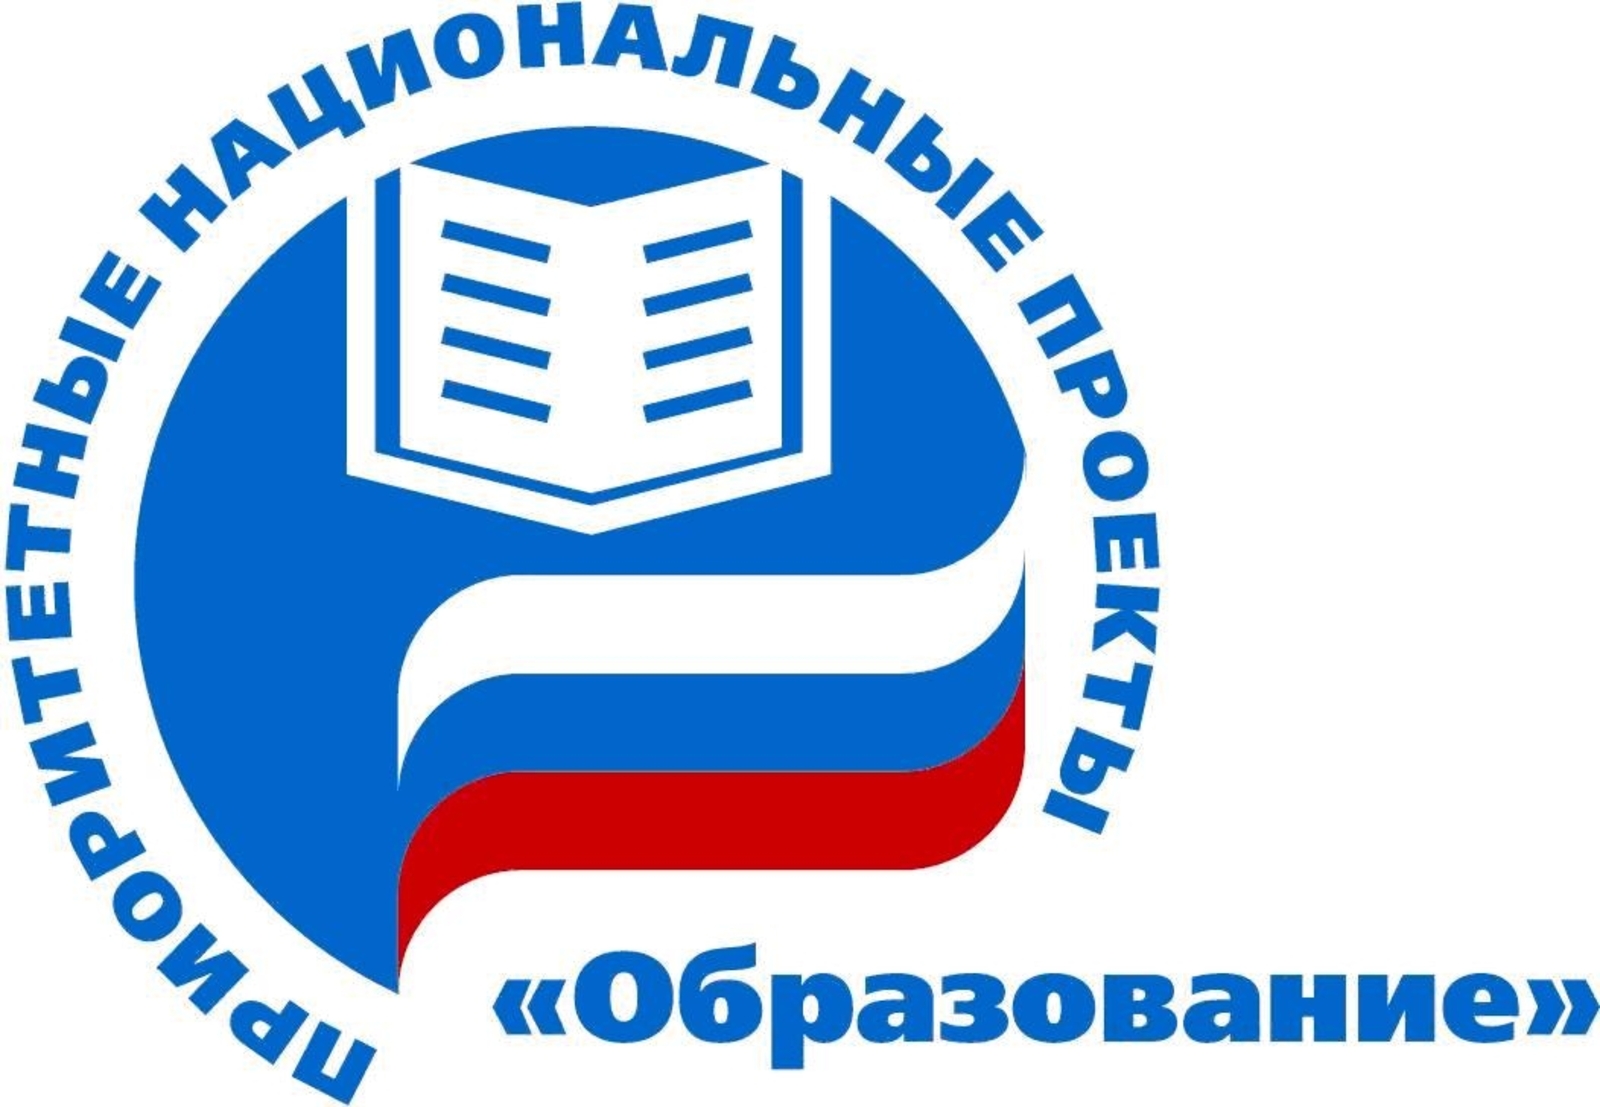 Башкортостан привлек более 90 млн рублей из федерального бюджета в рамках нацпроекта «Образование»